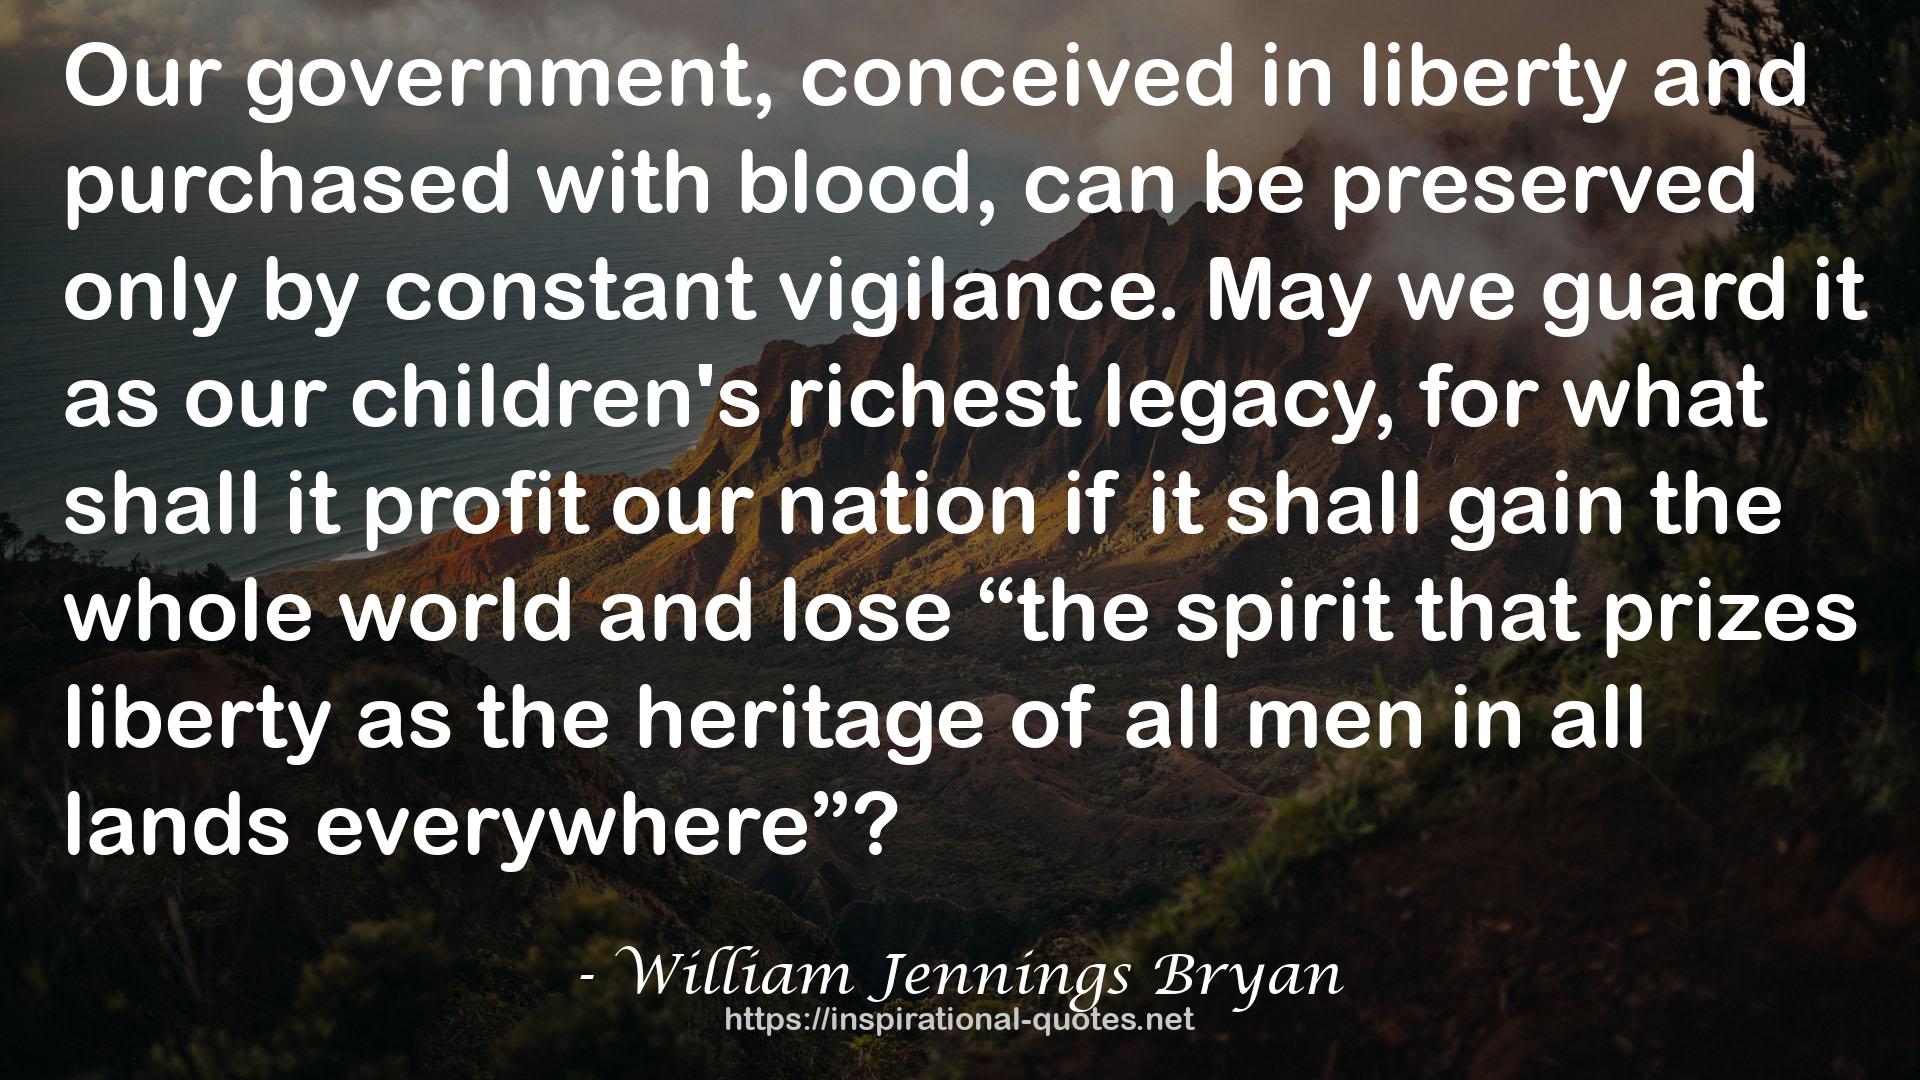 William Jennings Bryan QUOTES